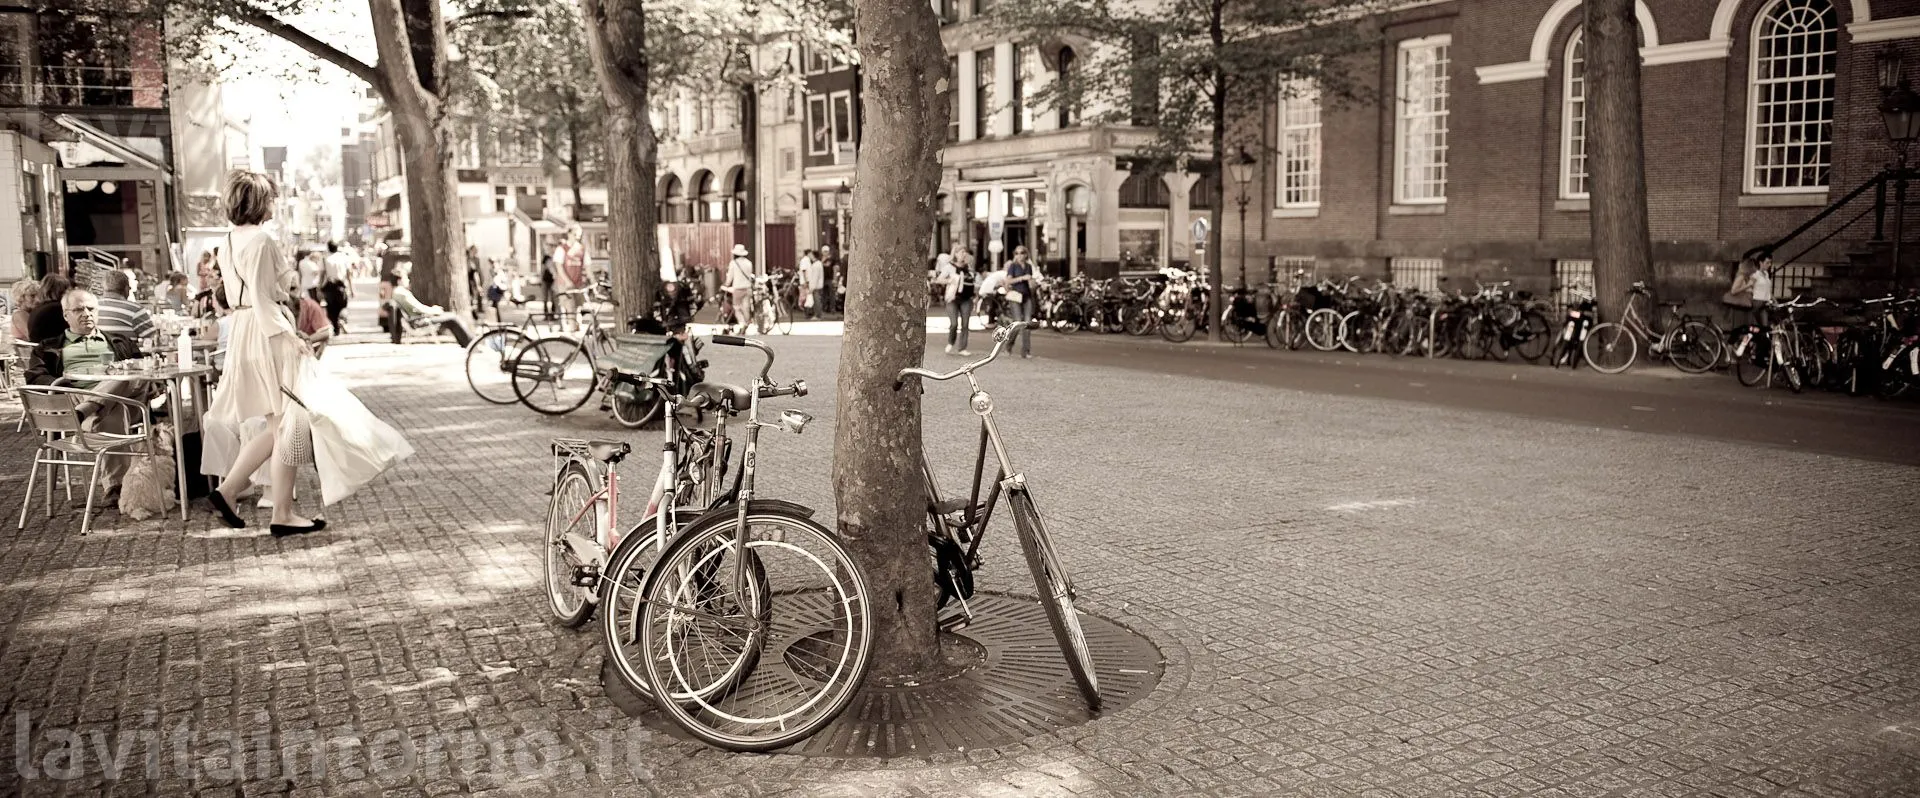 life's moments @ Amsterdam: bike's space
D700
Nikkor 24-70 F/2.8G AF-S